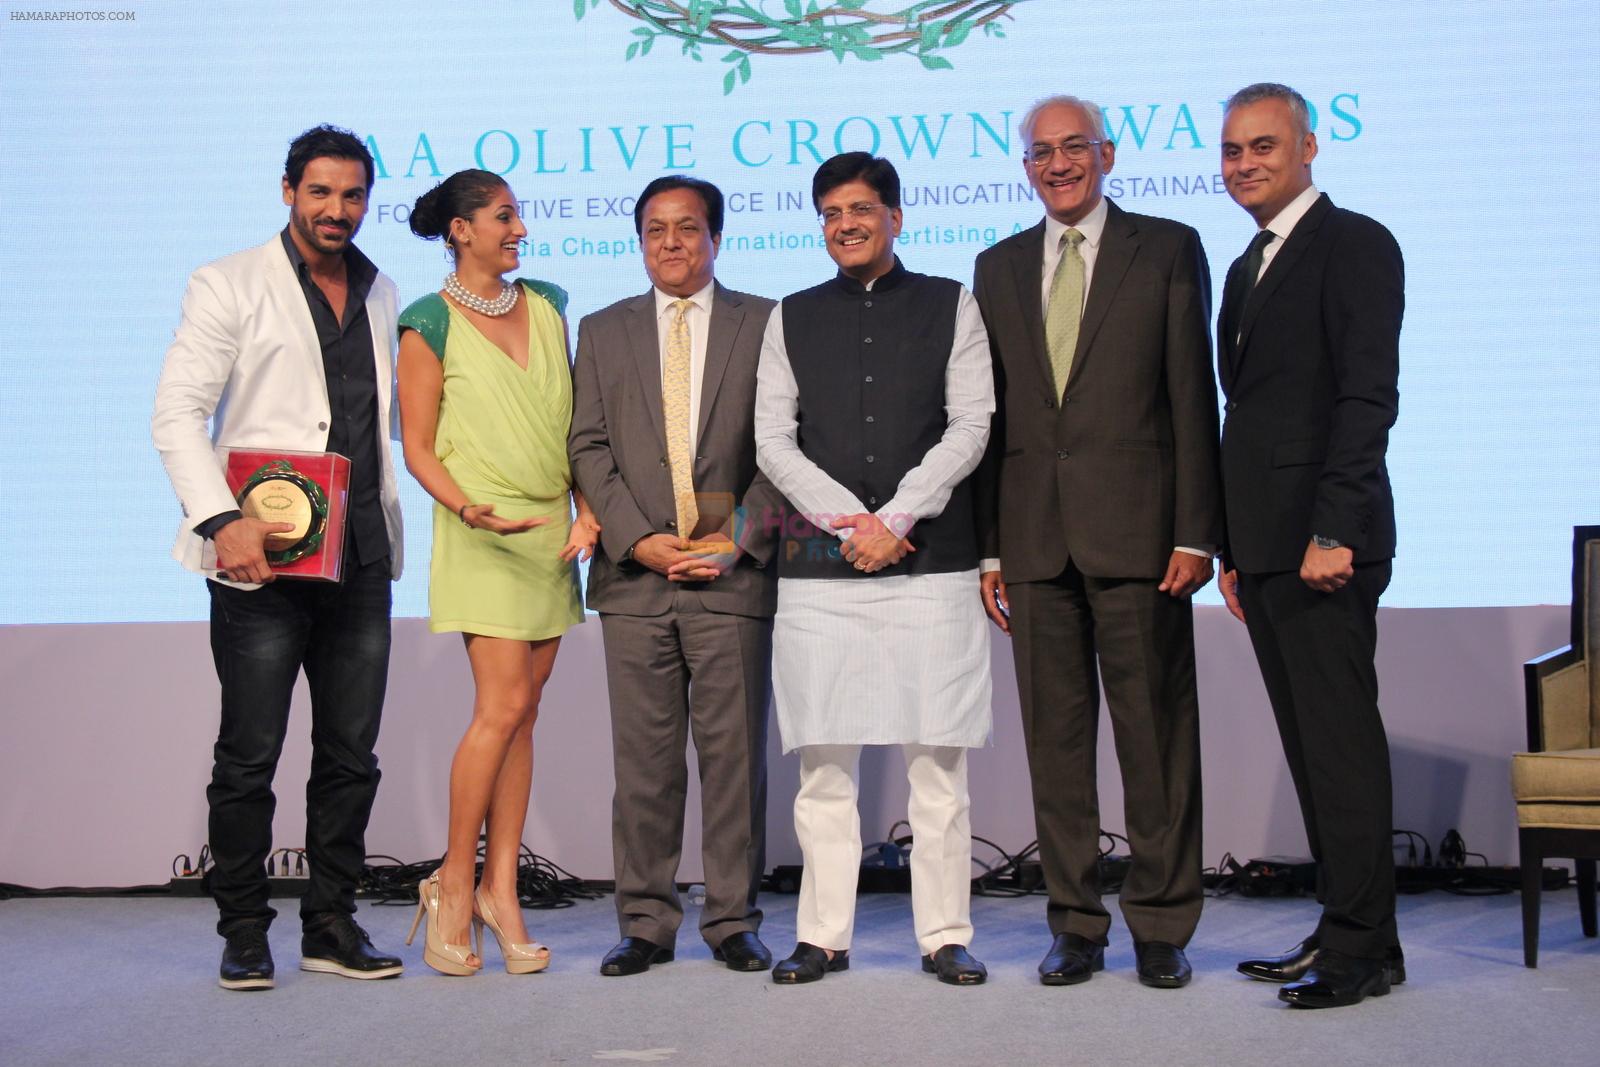 John Abraham at IAA awards in Mumbai on 27th March 2015